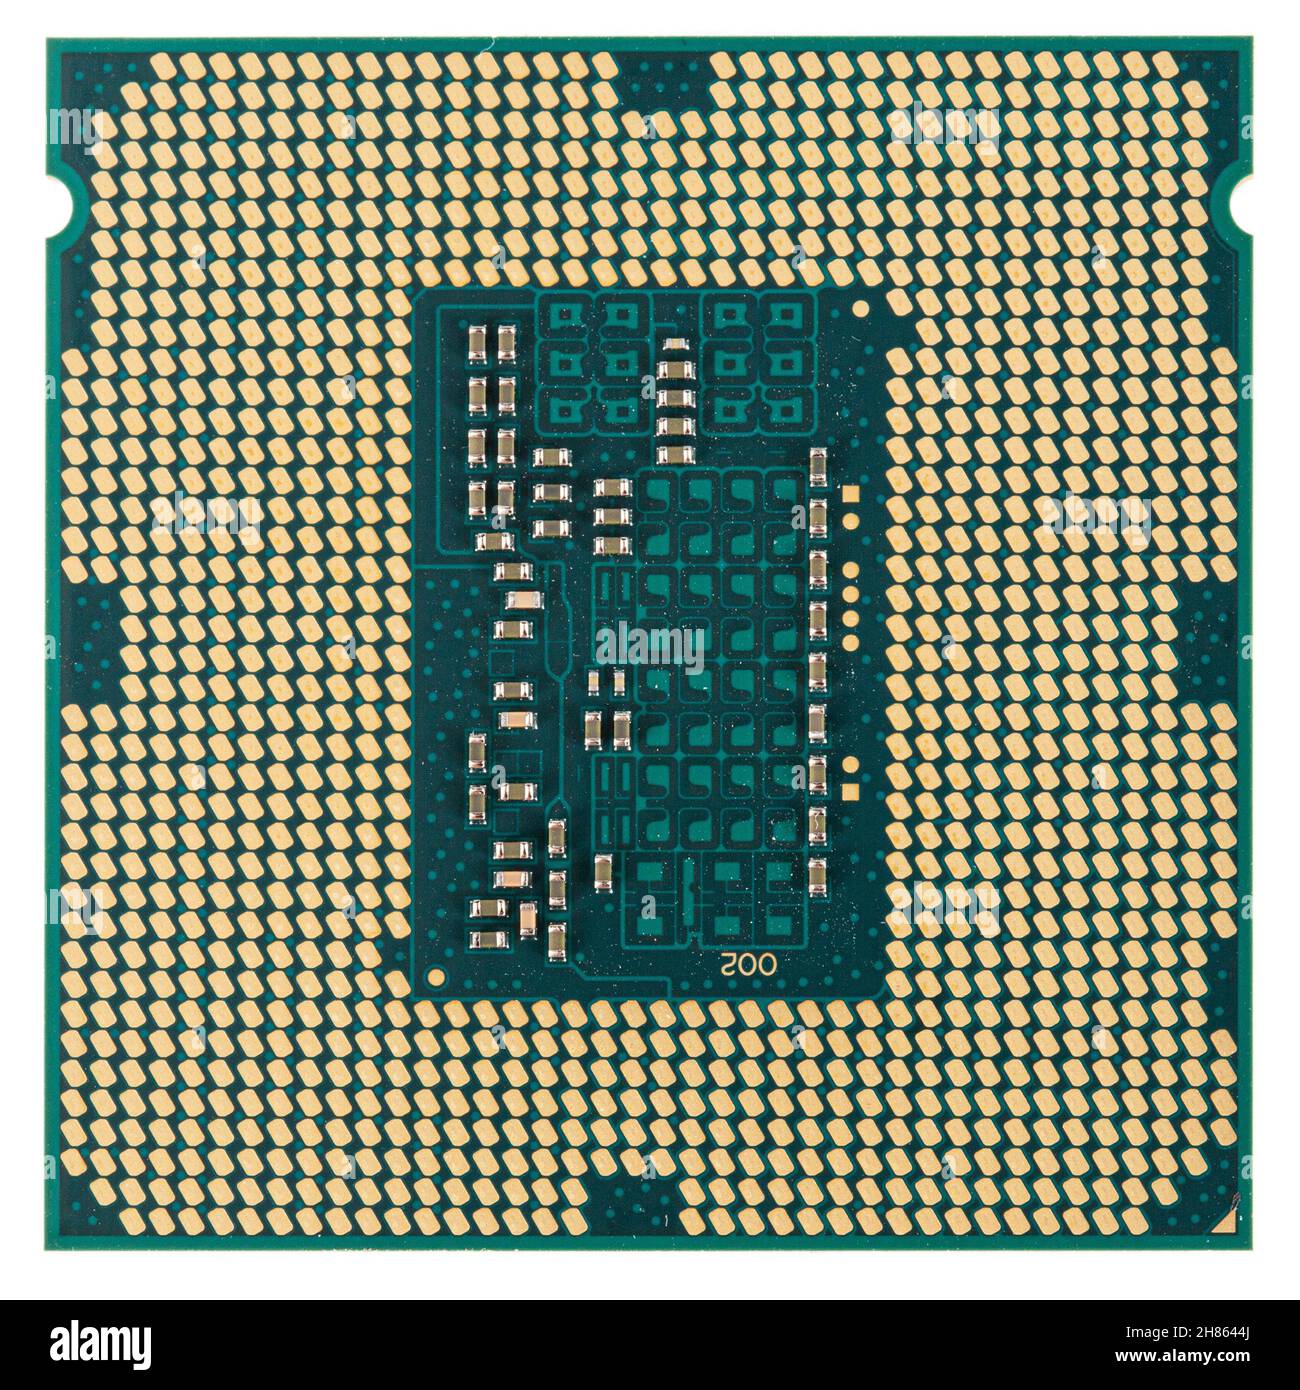 Processore per computer, CPU multicore, microchip dell'unità di elaborazione centrale, isolato su sfondo bianco Foto Stock